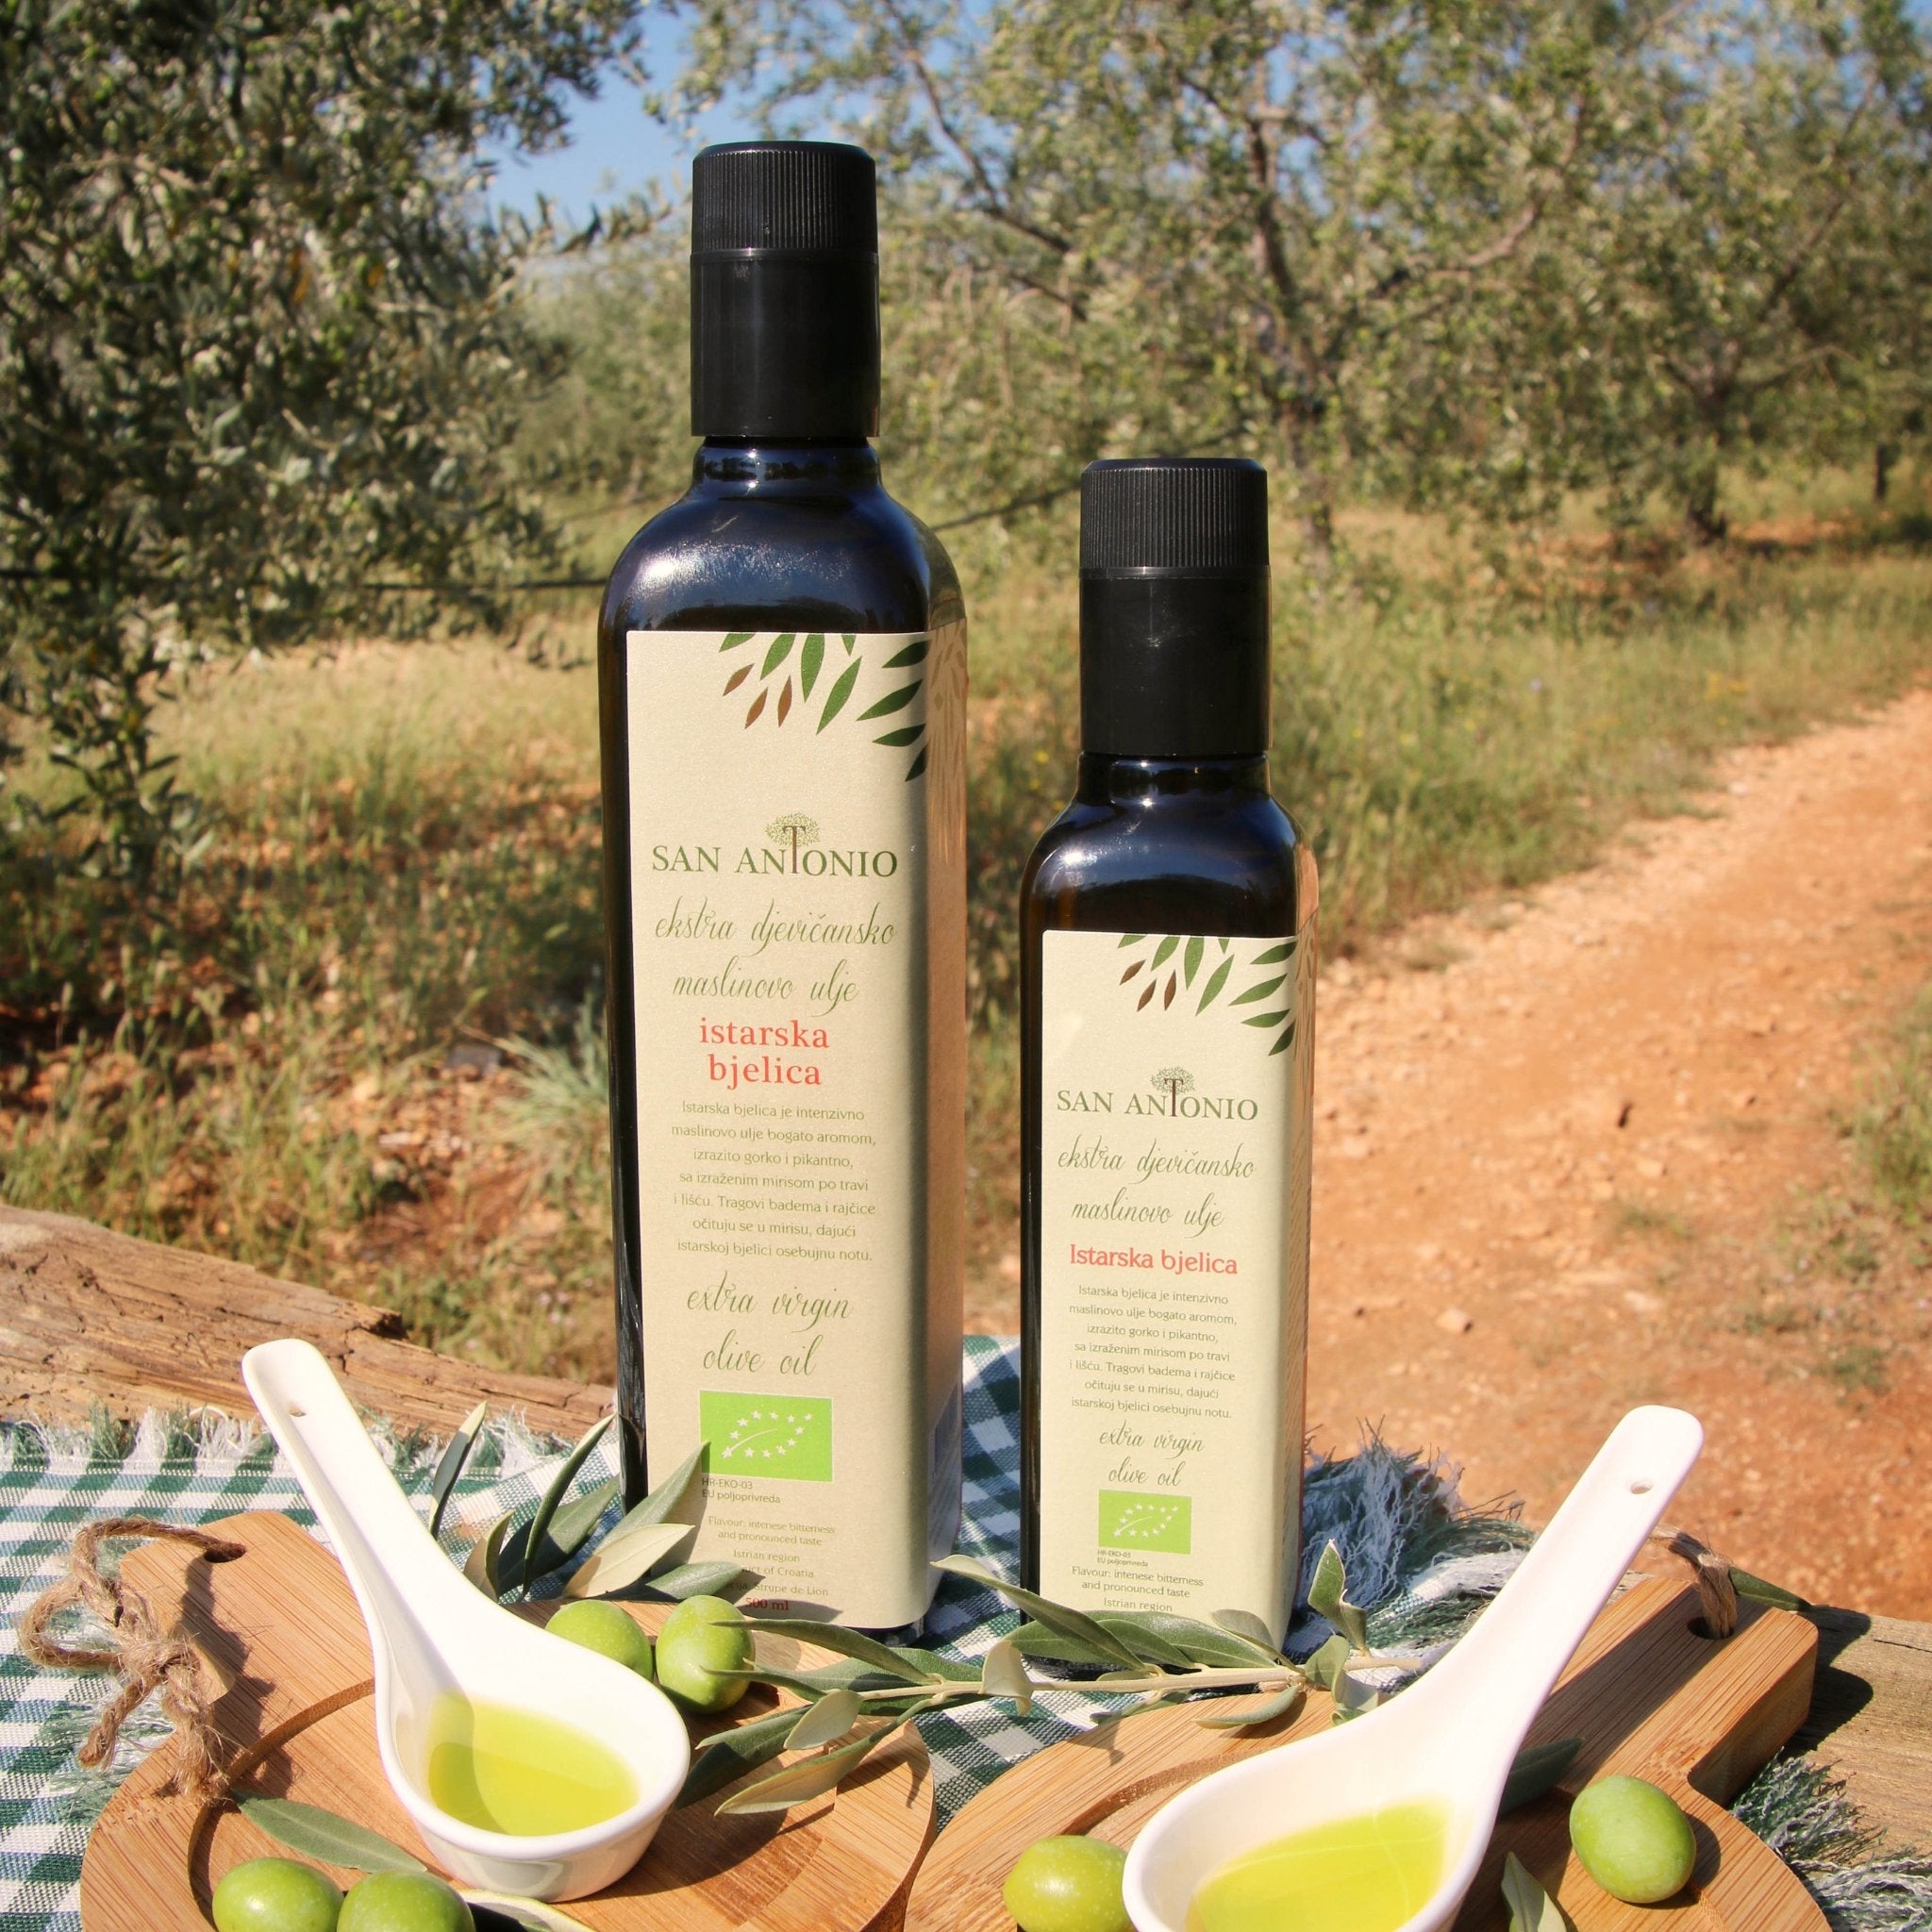 Bio-Olivenöl Istrisches Bjelica